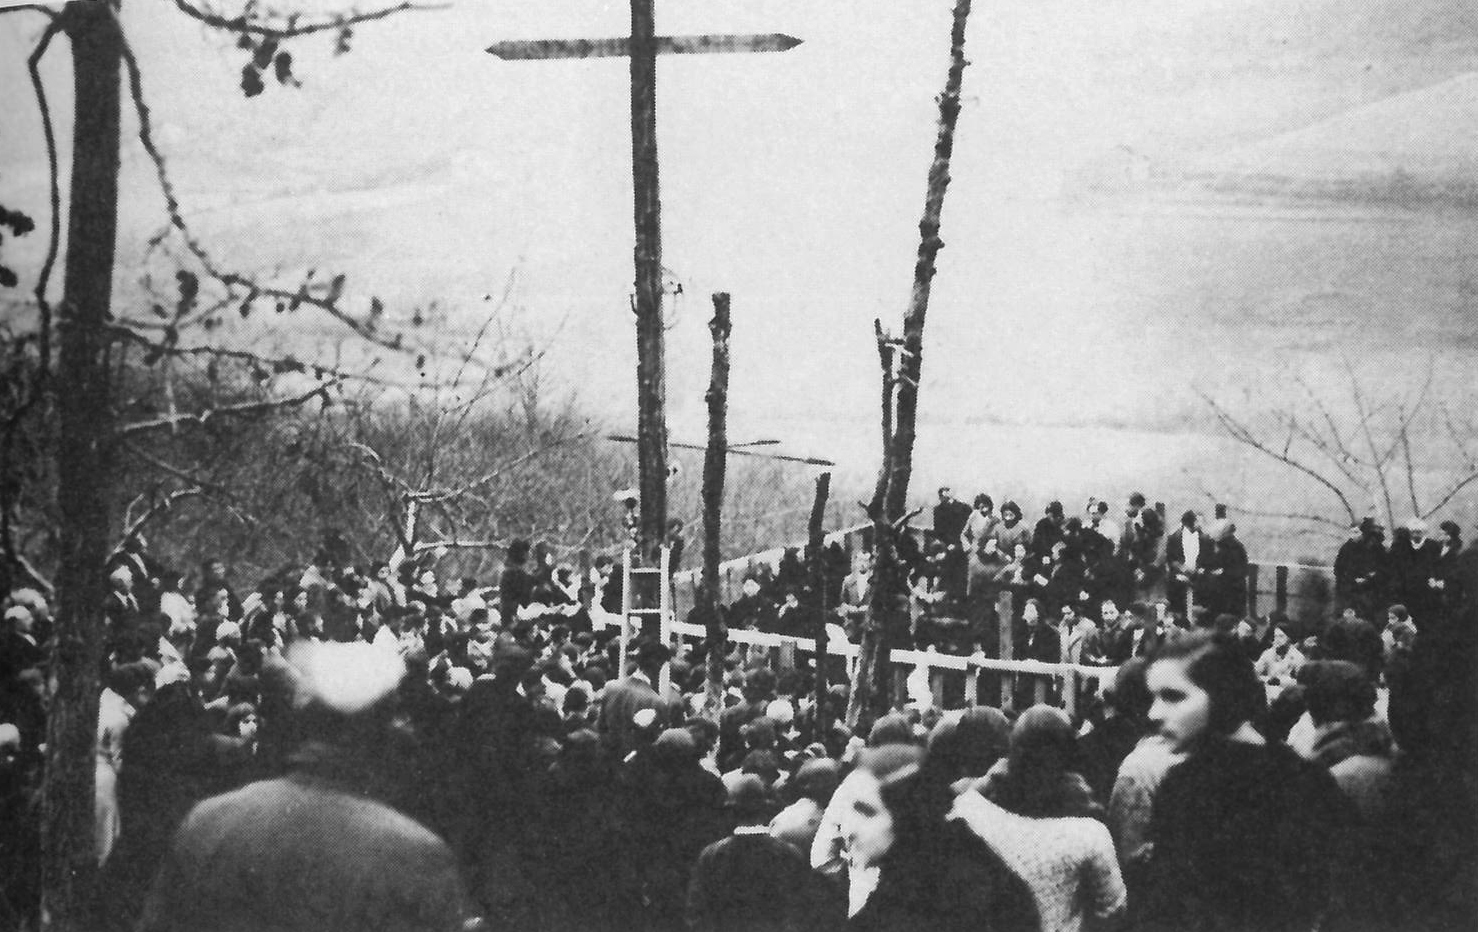 Gente contemplando a los videntes en visión sobre el tablado; 27 de diciembre de 1931. Fotografía de José Martínez.